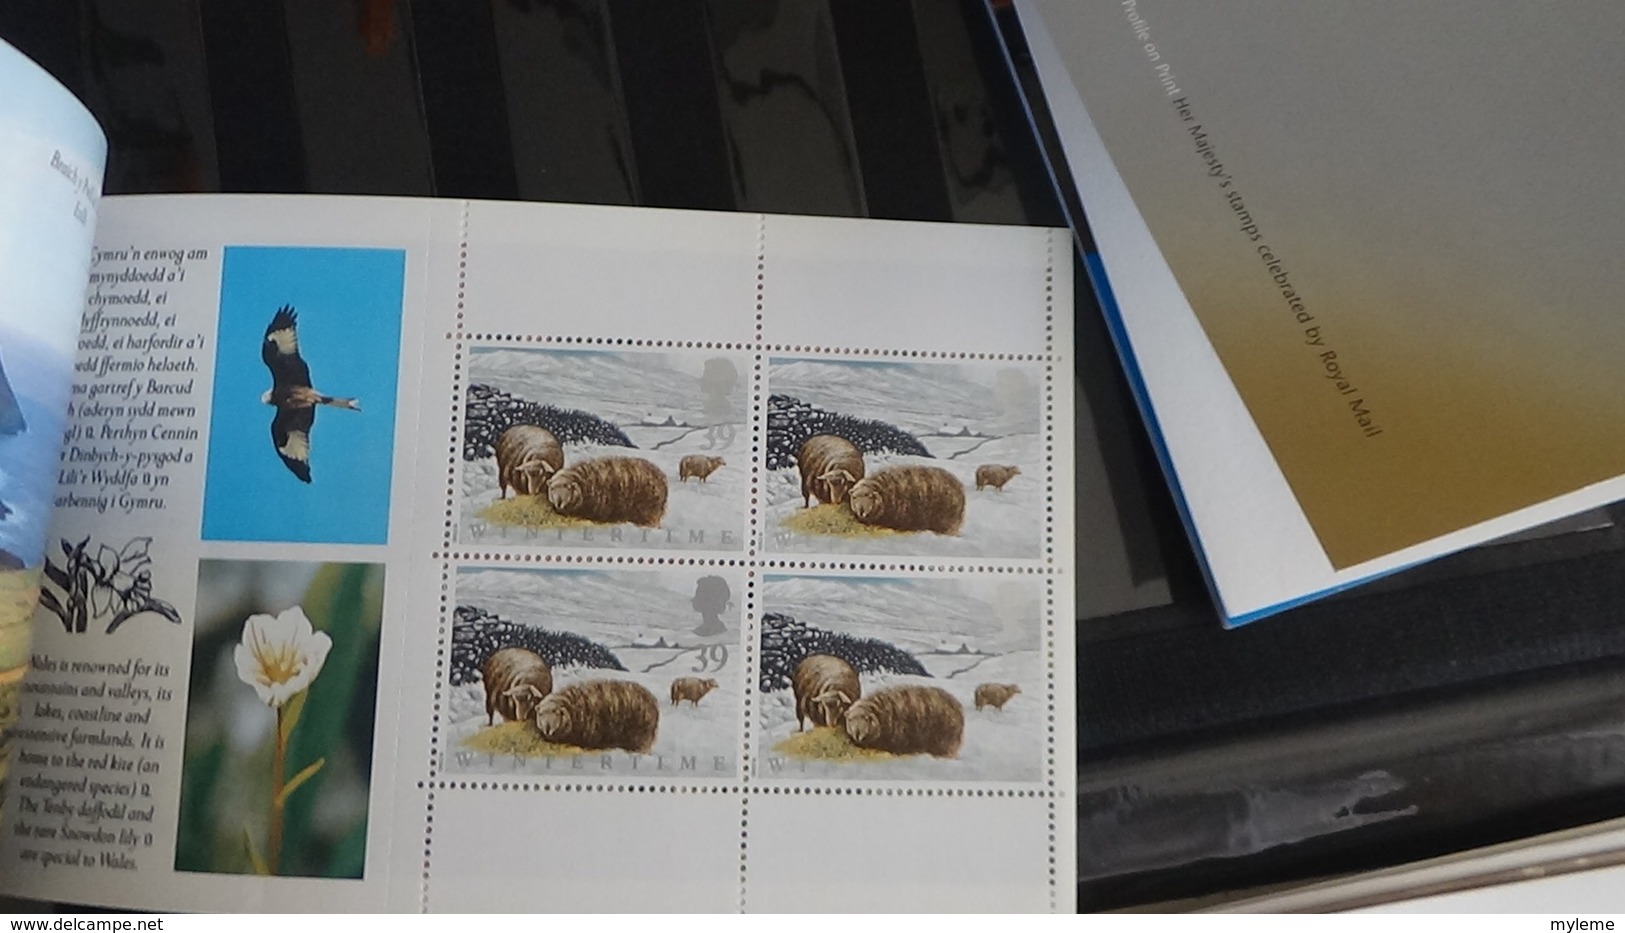 B78 Collection de 16 enveloppes + 19 carnets ** + 446 timbres ** de Grande Bretagne. Très beau.